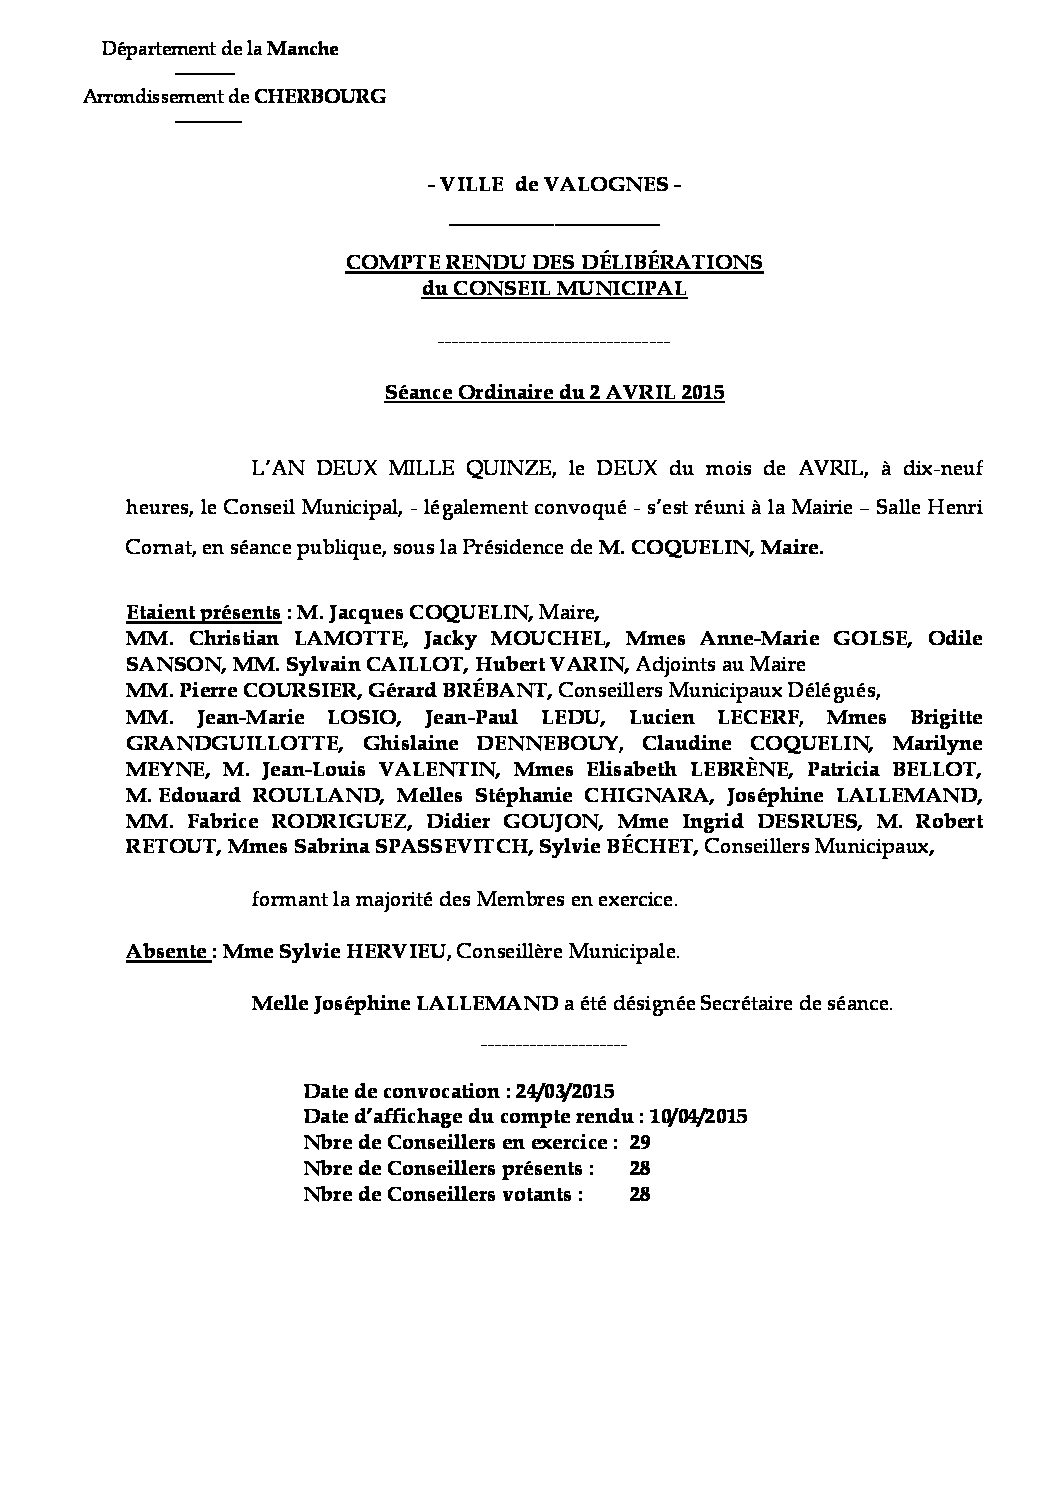 Extrait du registre des délibérations du 02-05-2015 - Compte rendu des questions soumises à délibération lors de la séance du Conseil Municipal du 2 avril 2015.